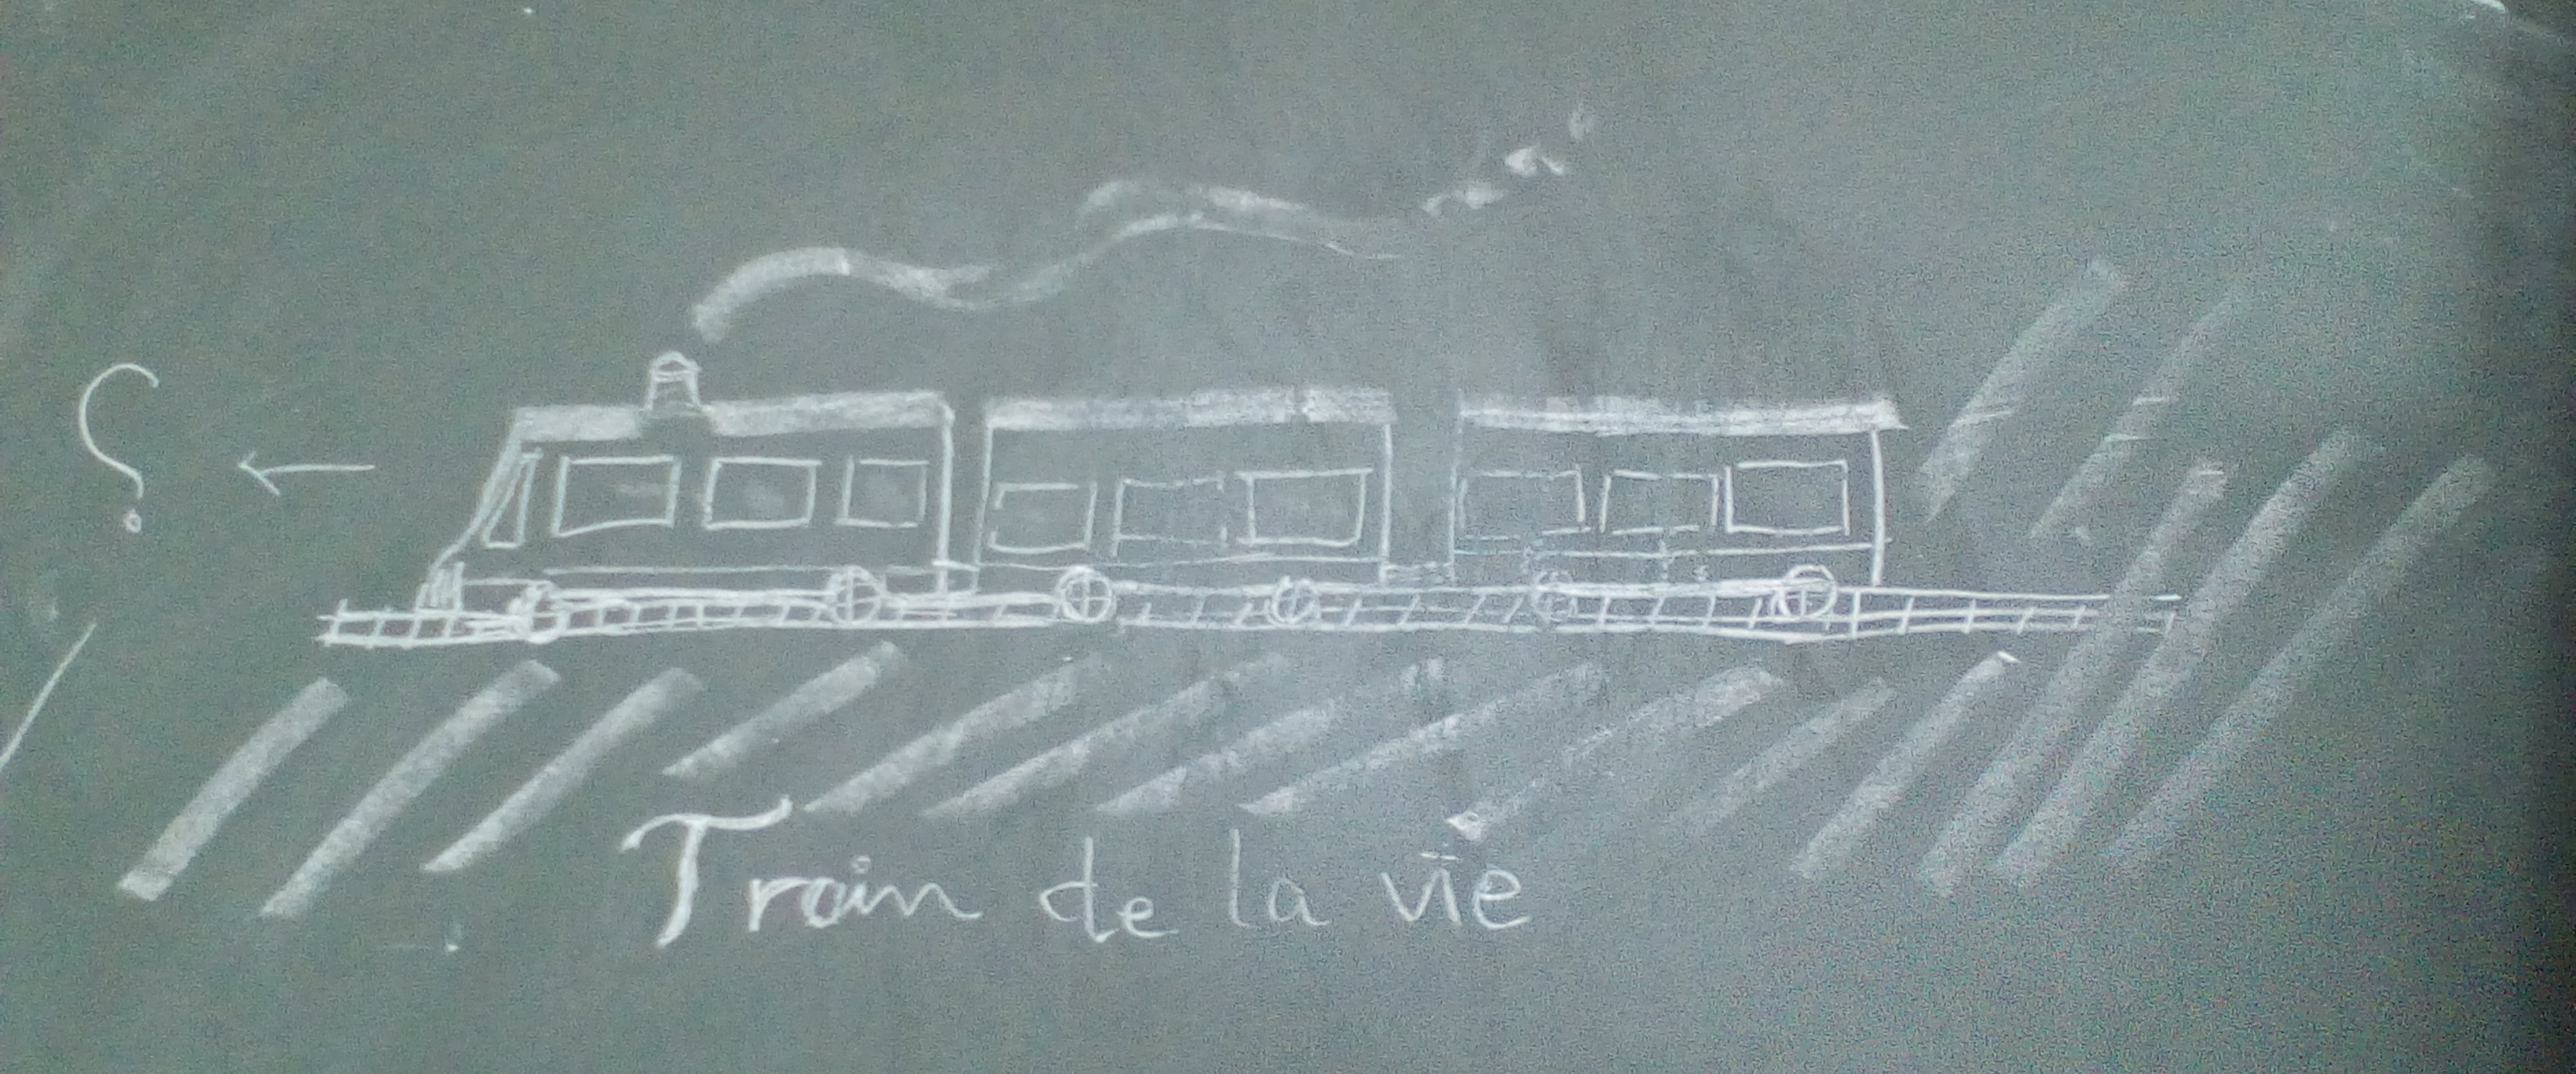 Dessin à la craie sur un tableau representant un train à vapeur.